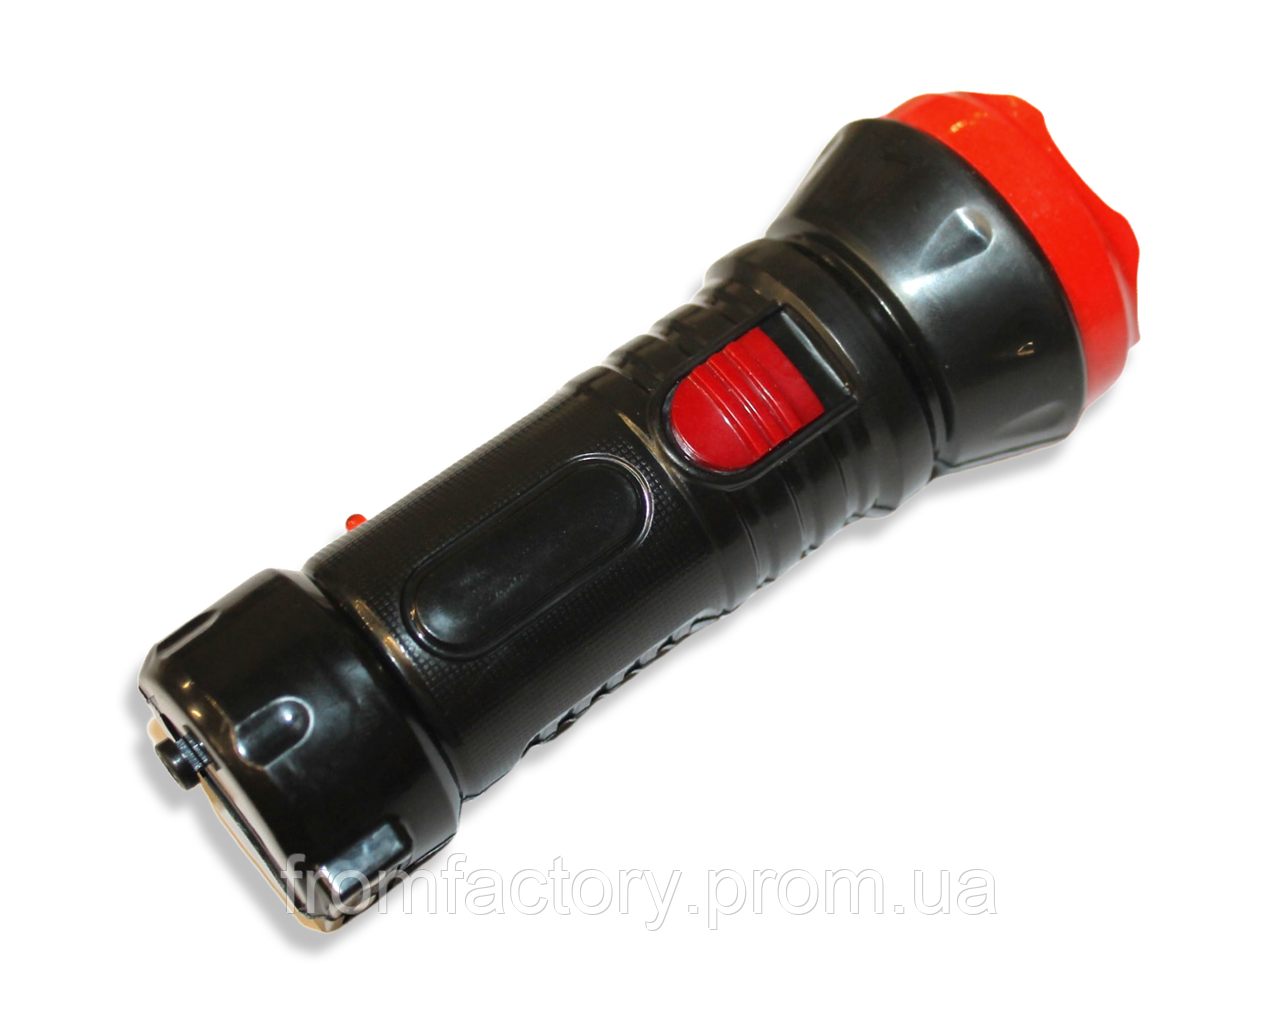 Ліхтарик ручний акумуляторний із зарядкою від мережі WSD-9936 220В/13см/4см